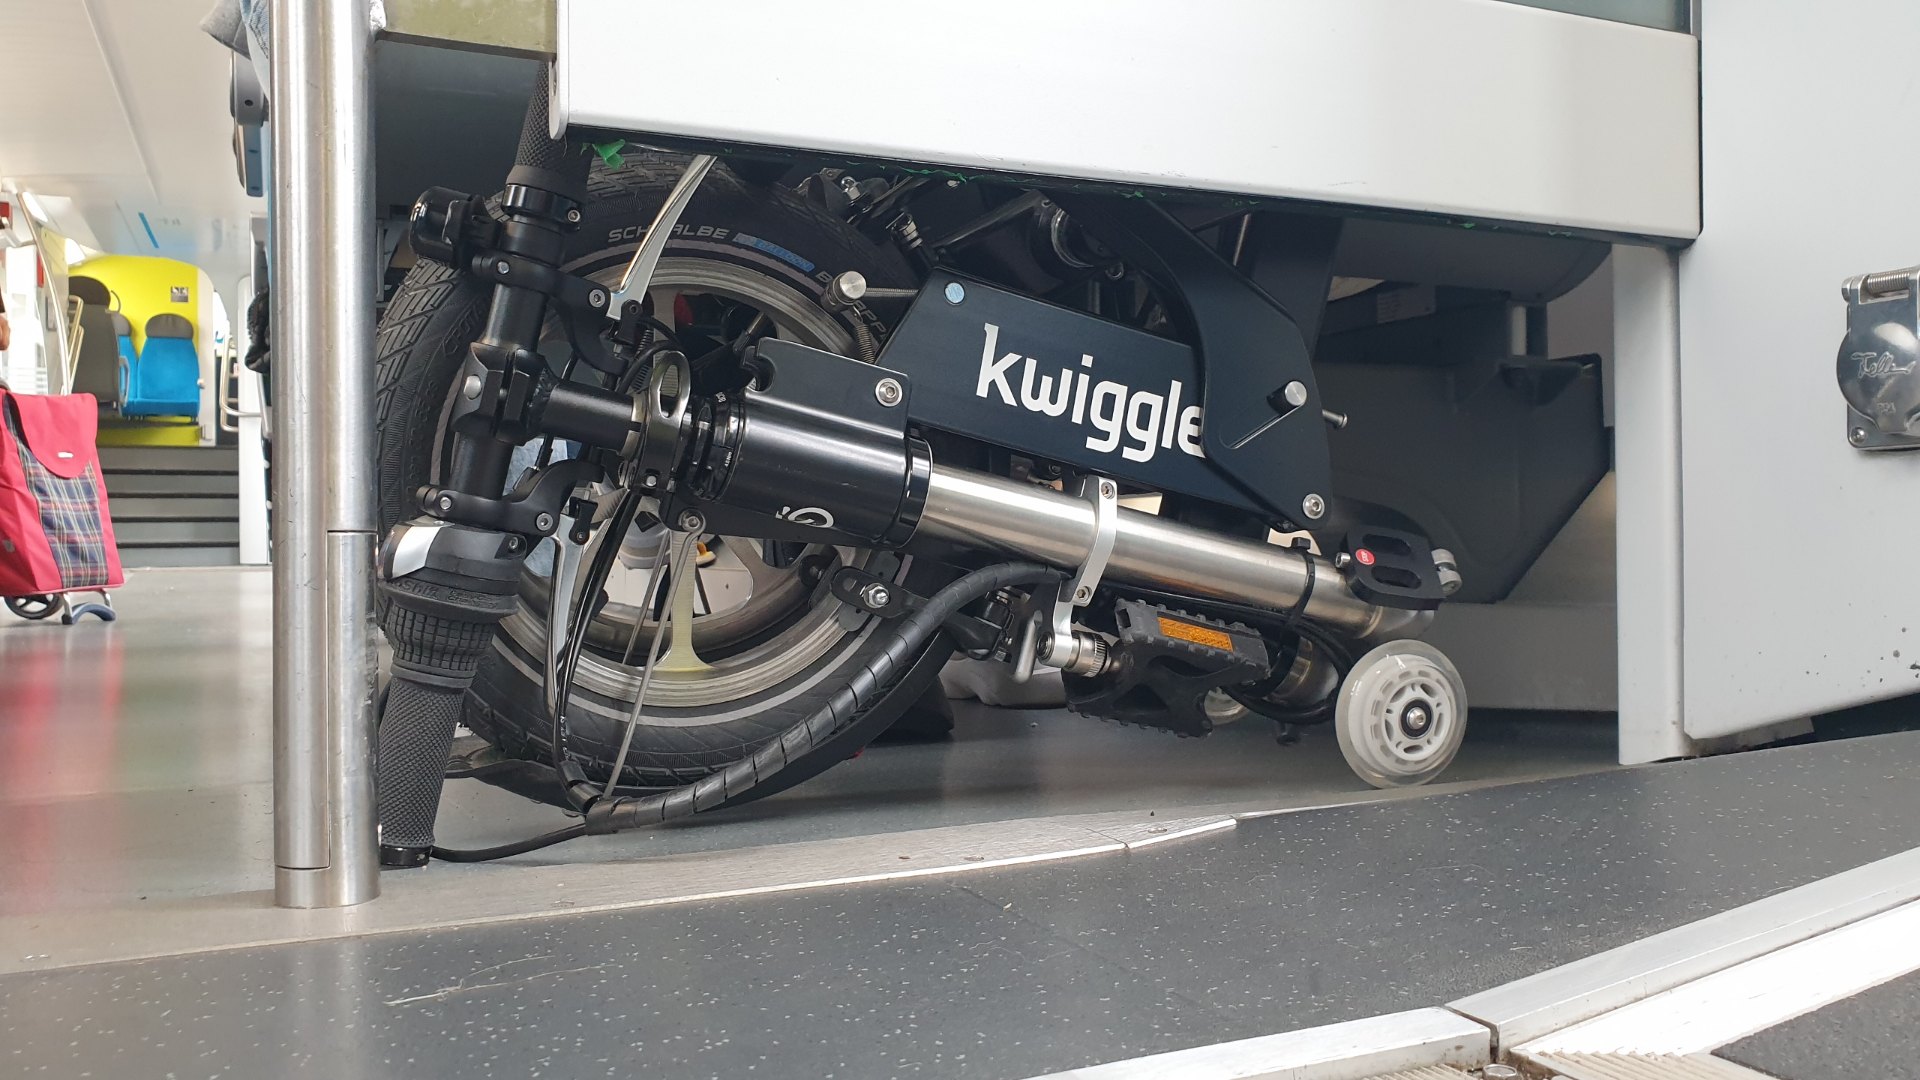 Bicicleta-plegable-Kwiggle-detrás-del-asiento-del-tren